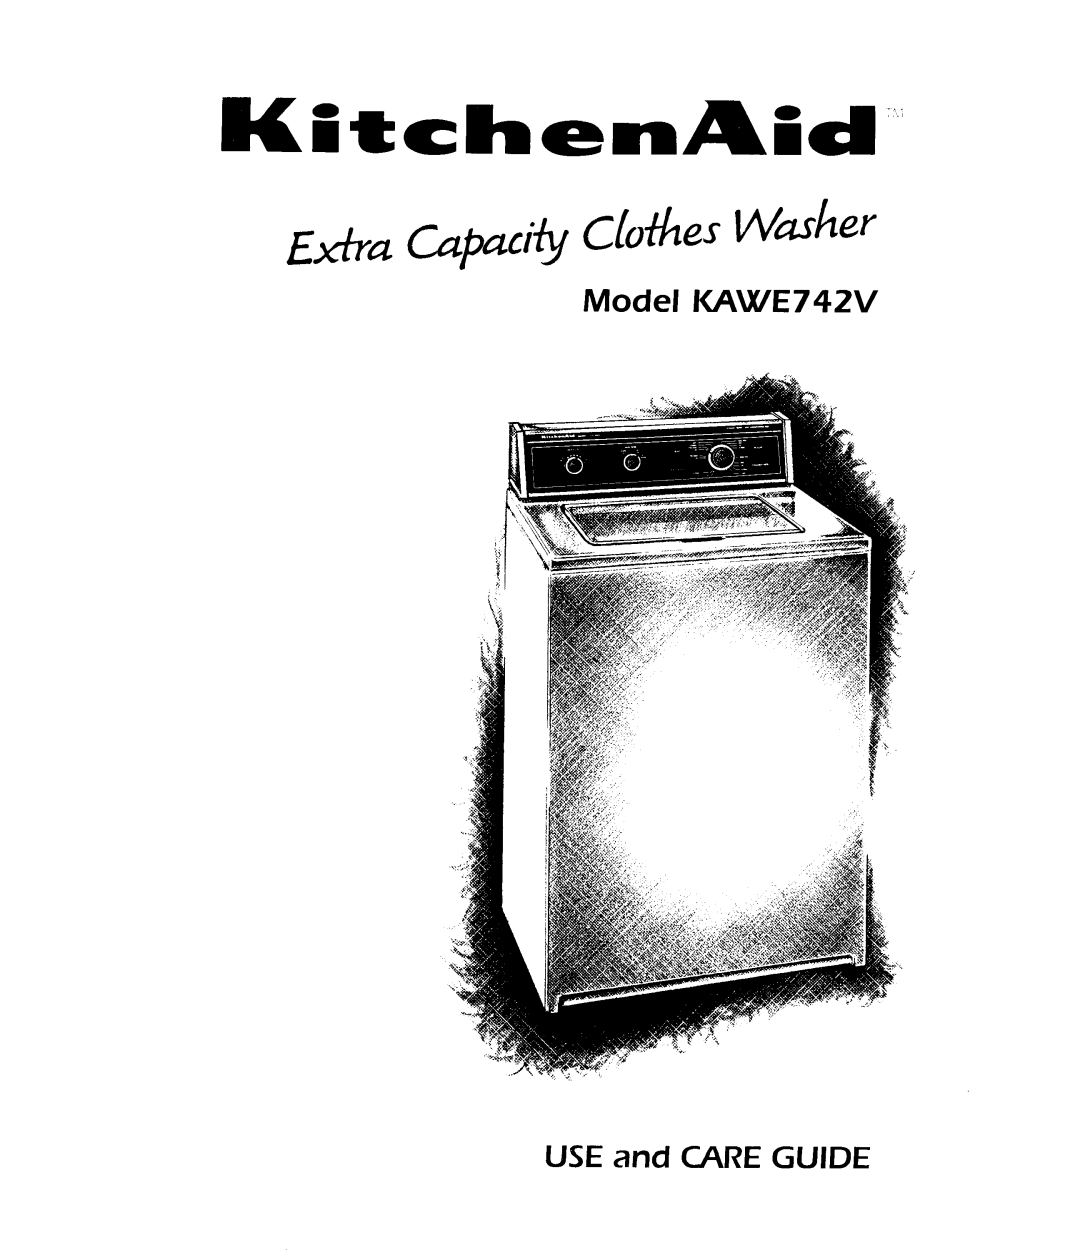 KitchenAid KAWE742V manual 